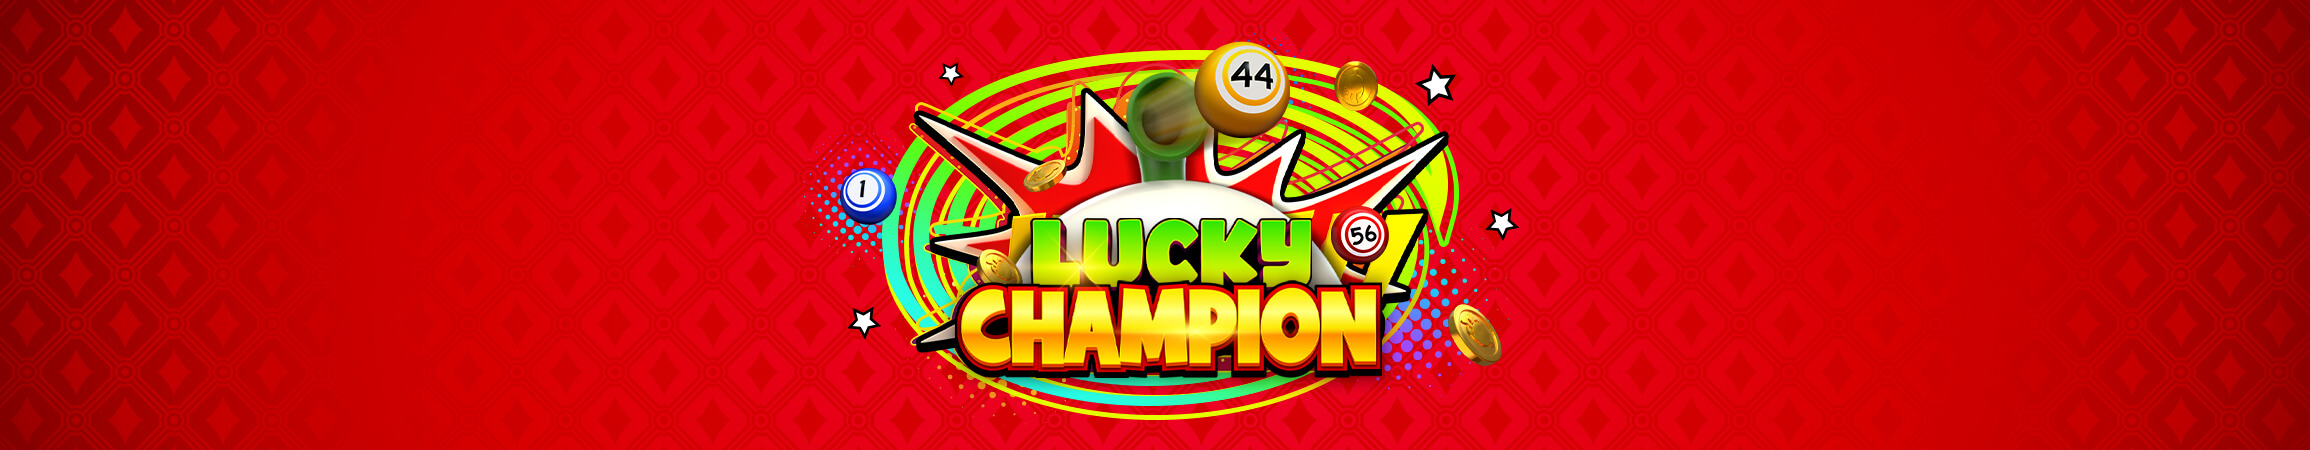 Rasca y conviértete en uno de los Lucky Champions de FBM®